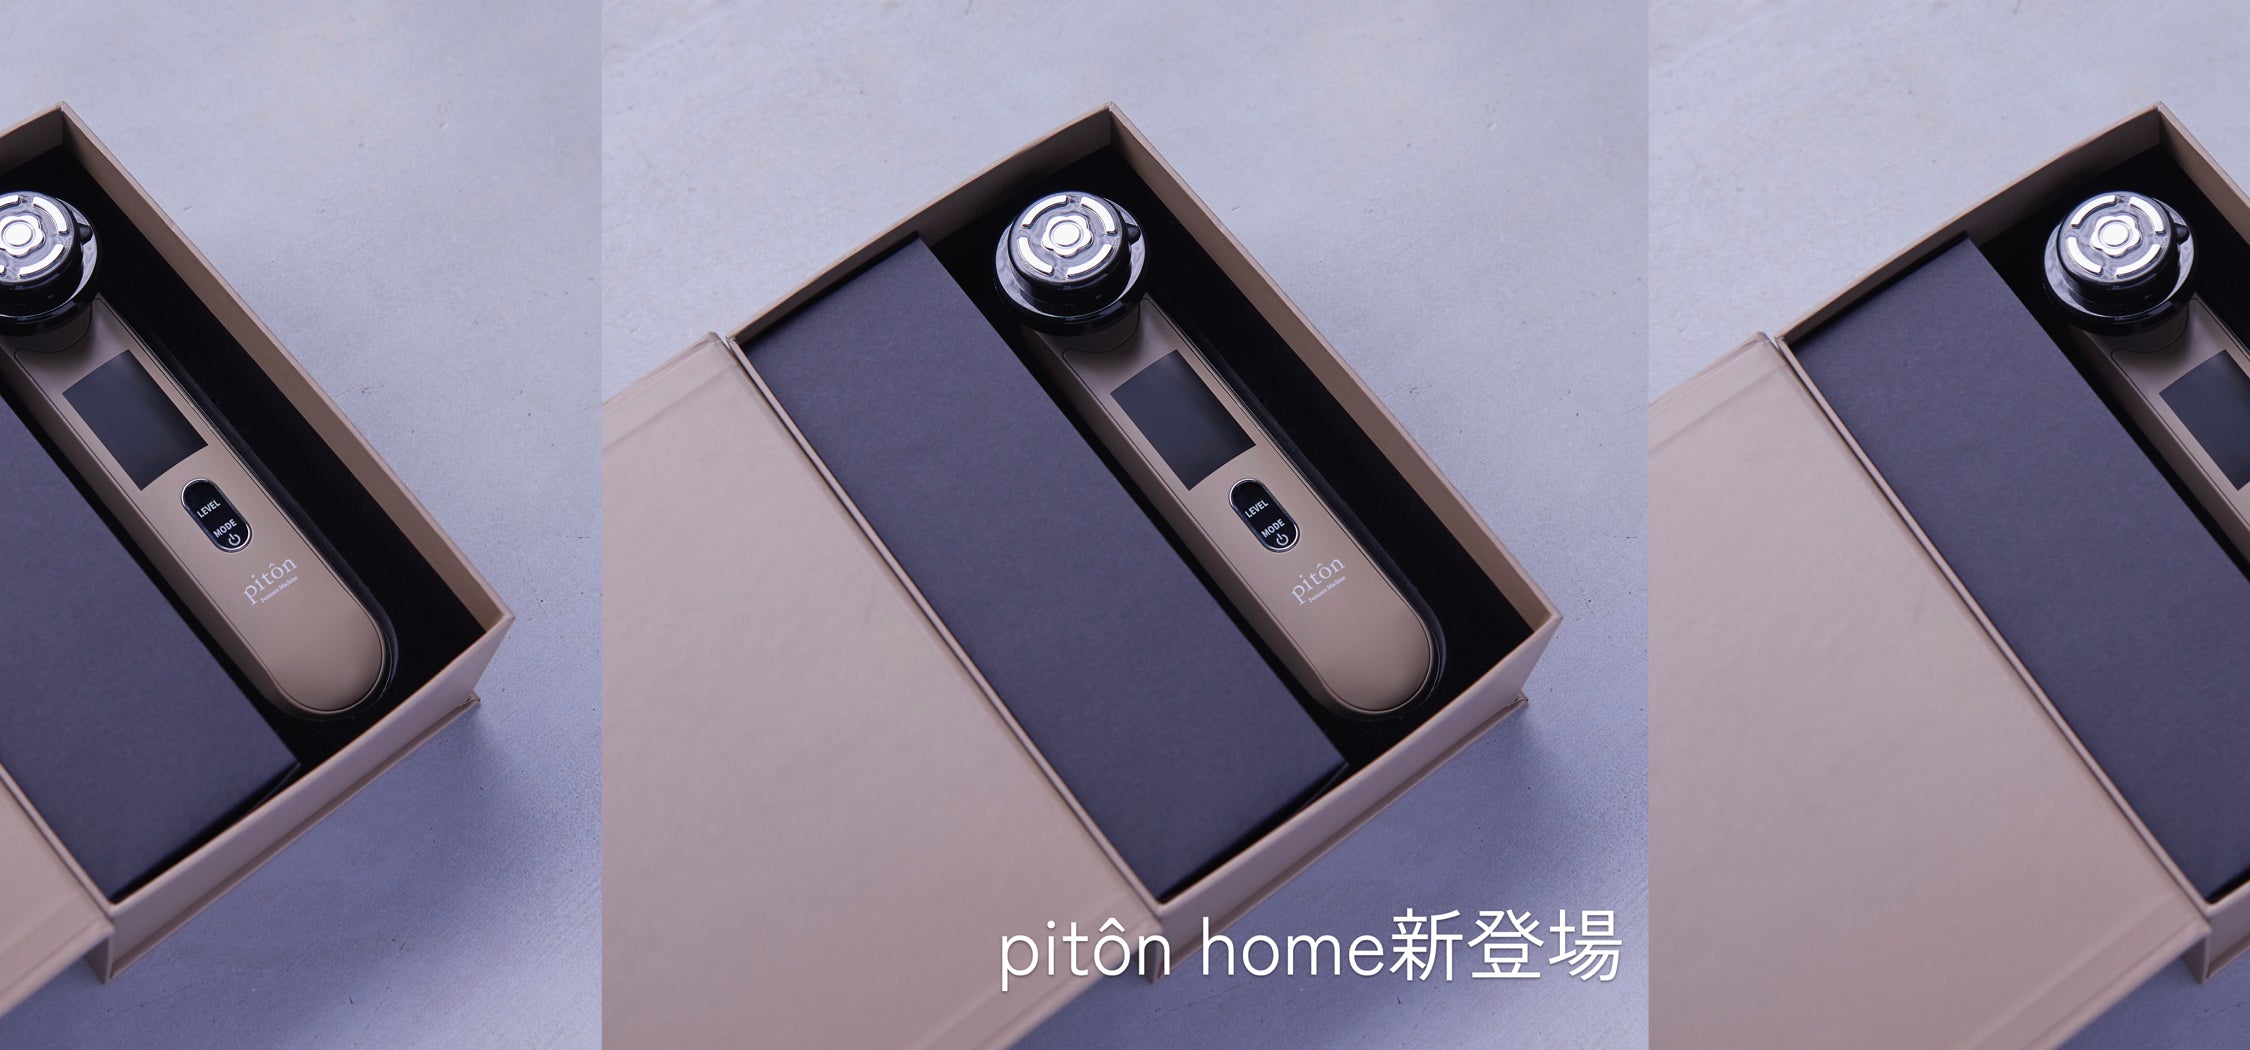 新製品「piton home」発売記念キャンペーン開催